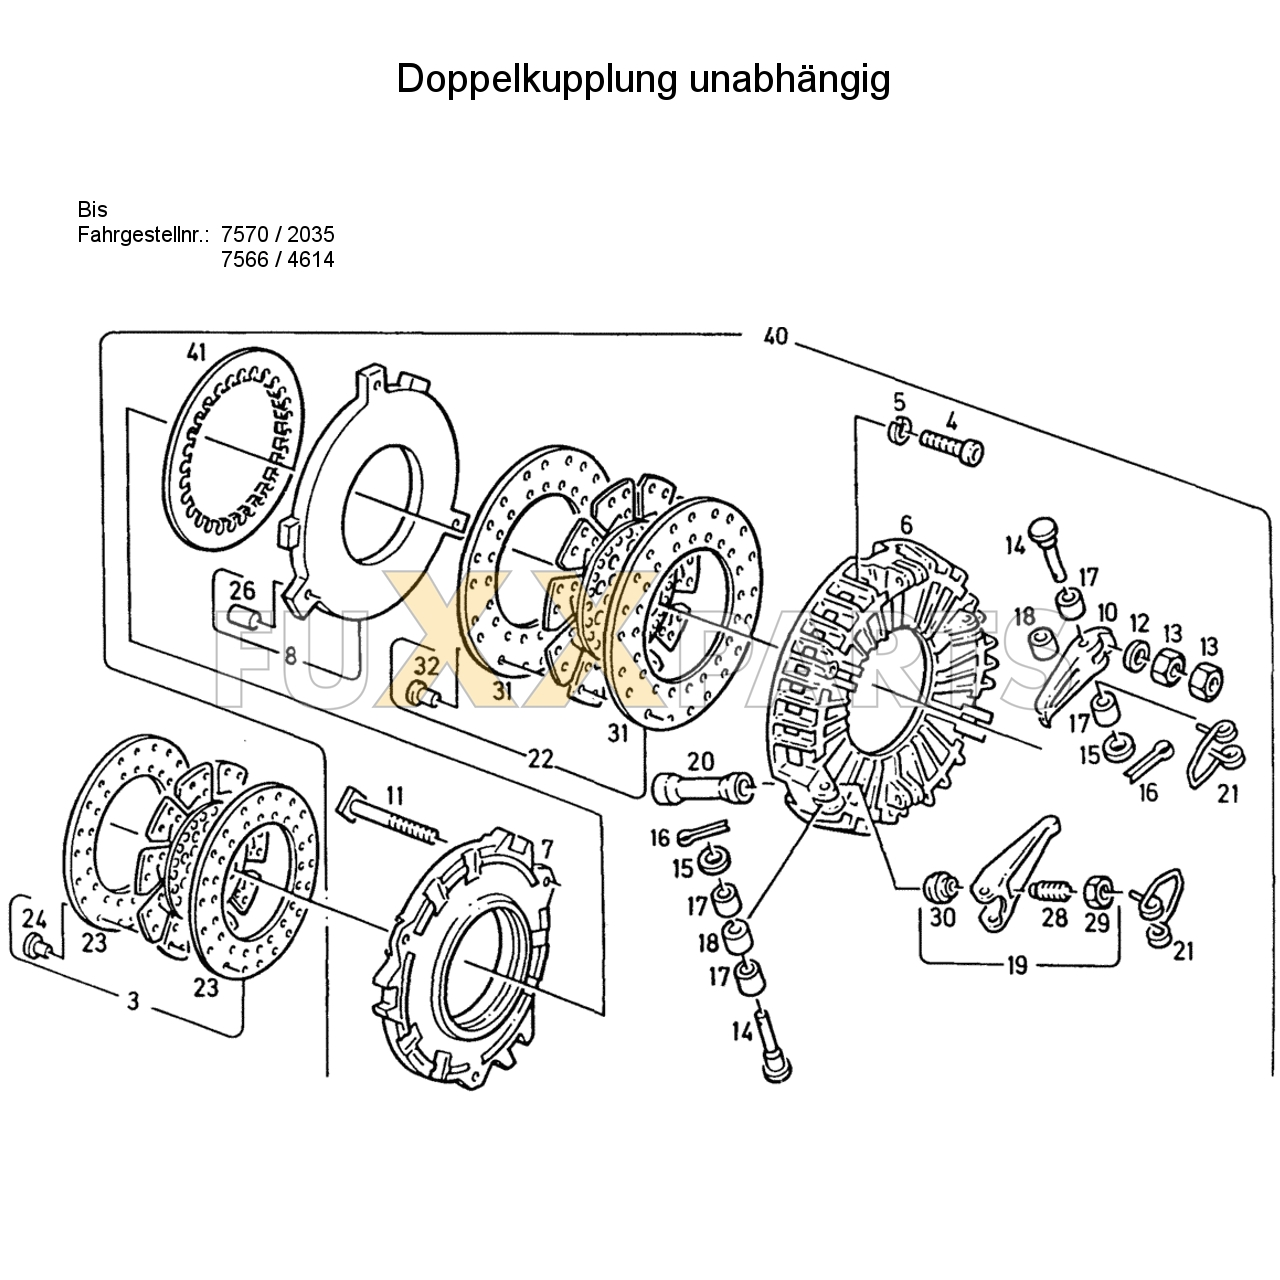 D 6807 Doppelkupplung unabhängig 1